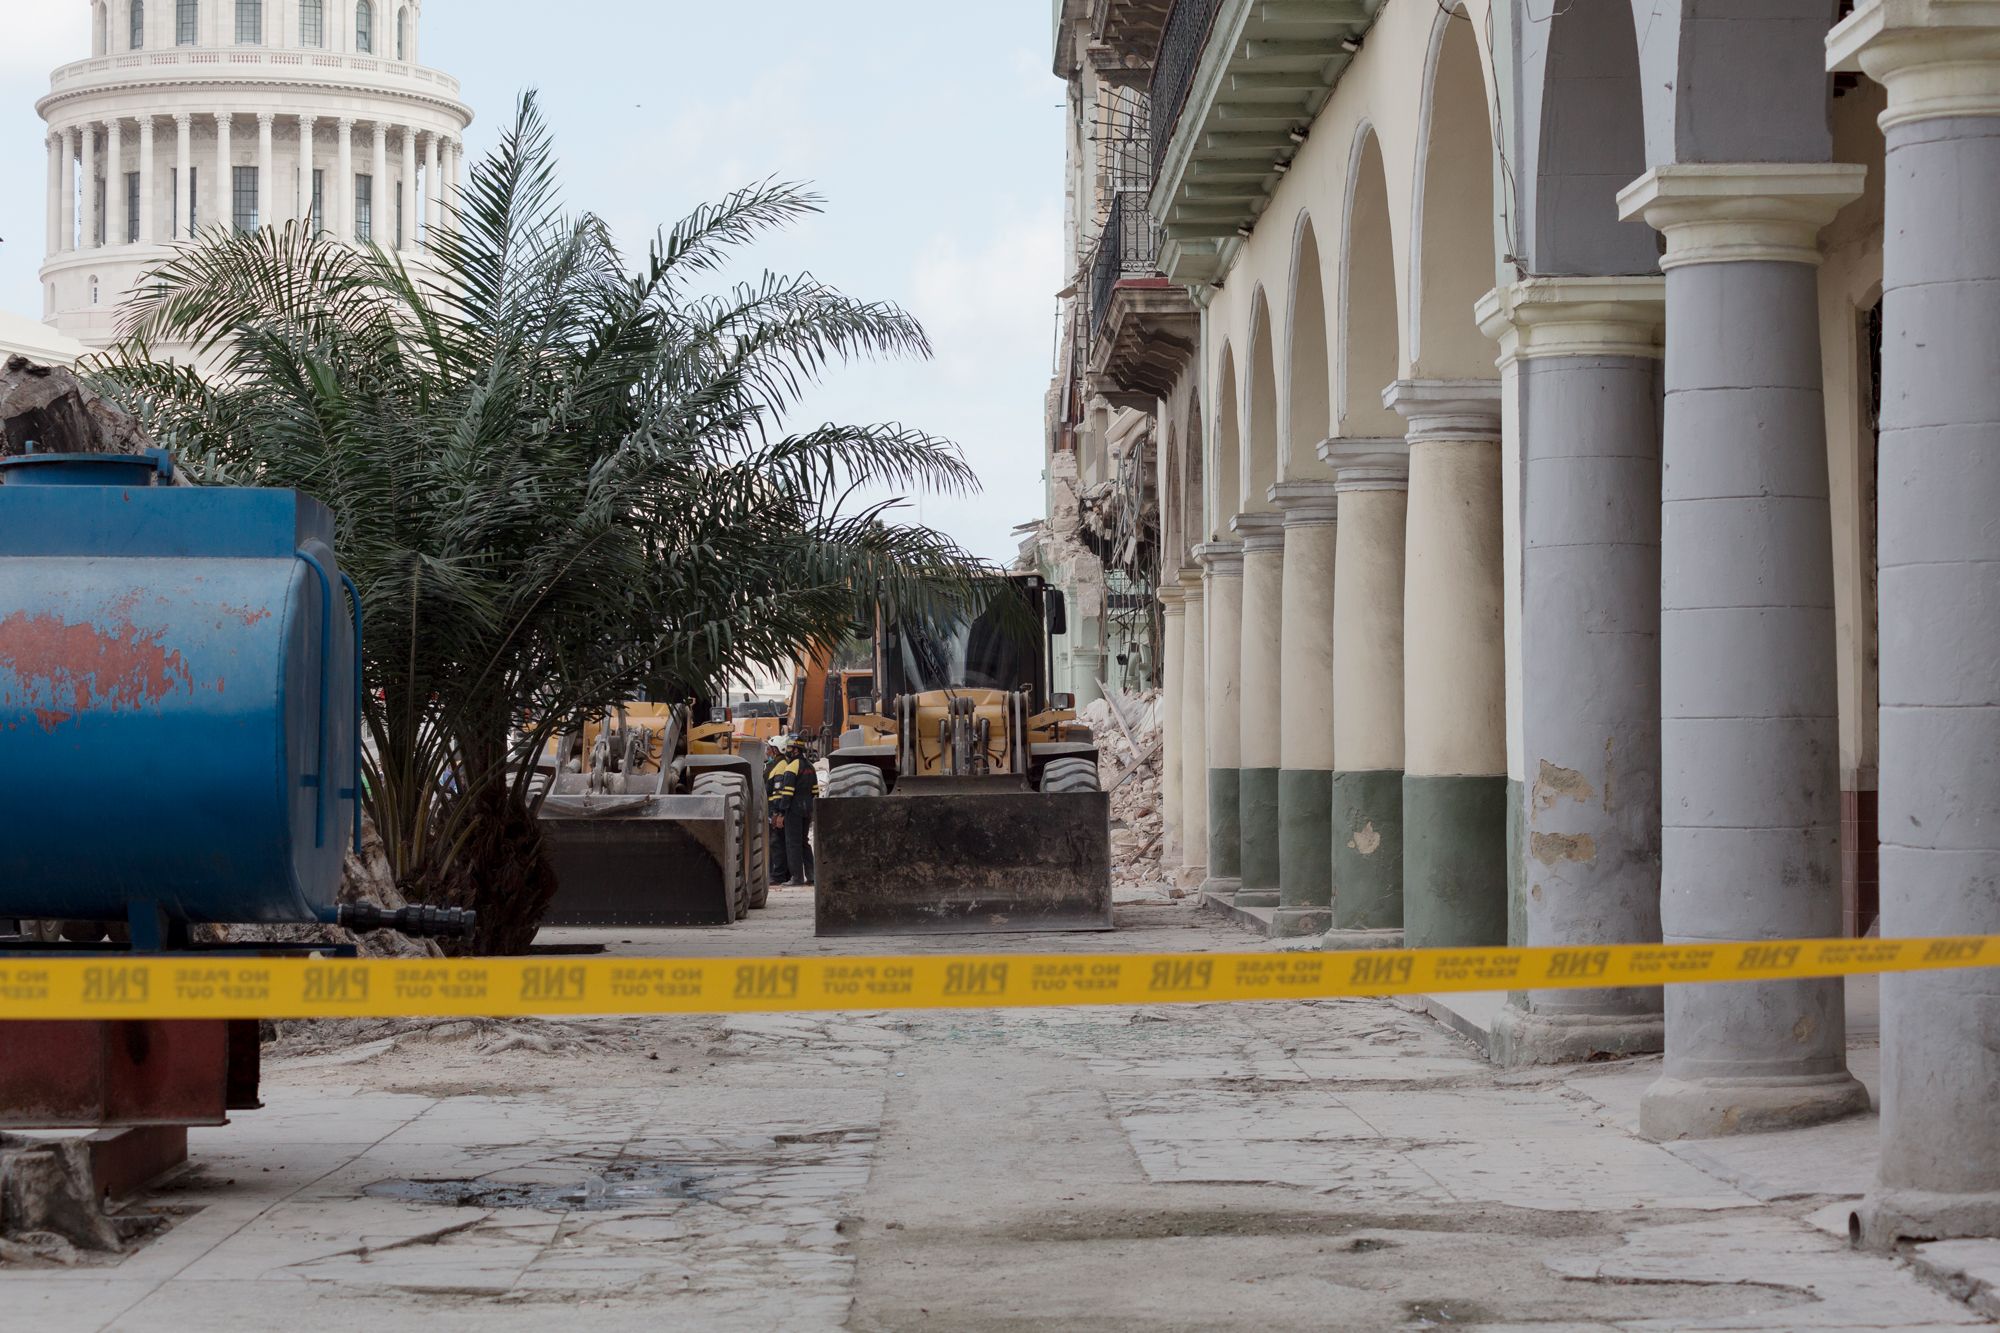 Maquinaria para retirar los escombros tras la explosión en el hotel Saratoga, La Habana, 7 de mayo de 2022 / Foto: El Estornudo